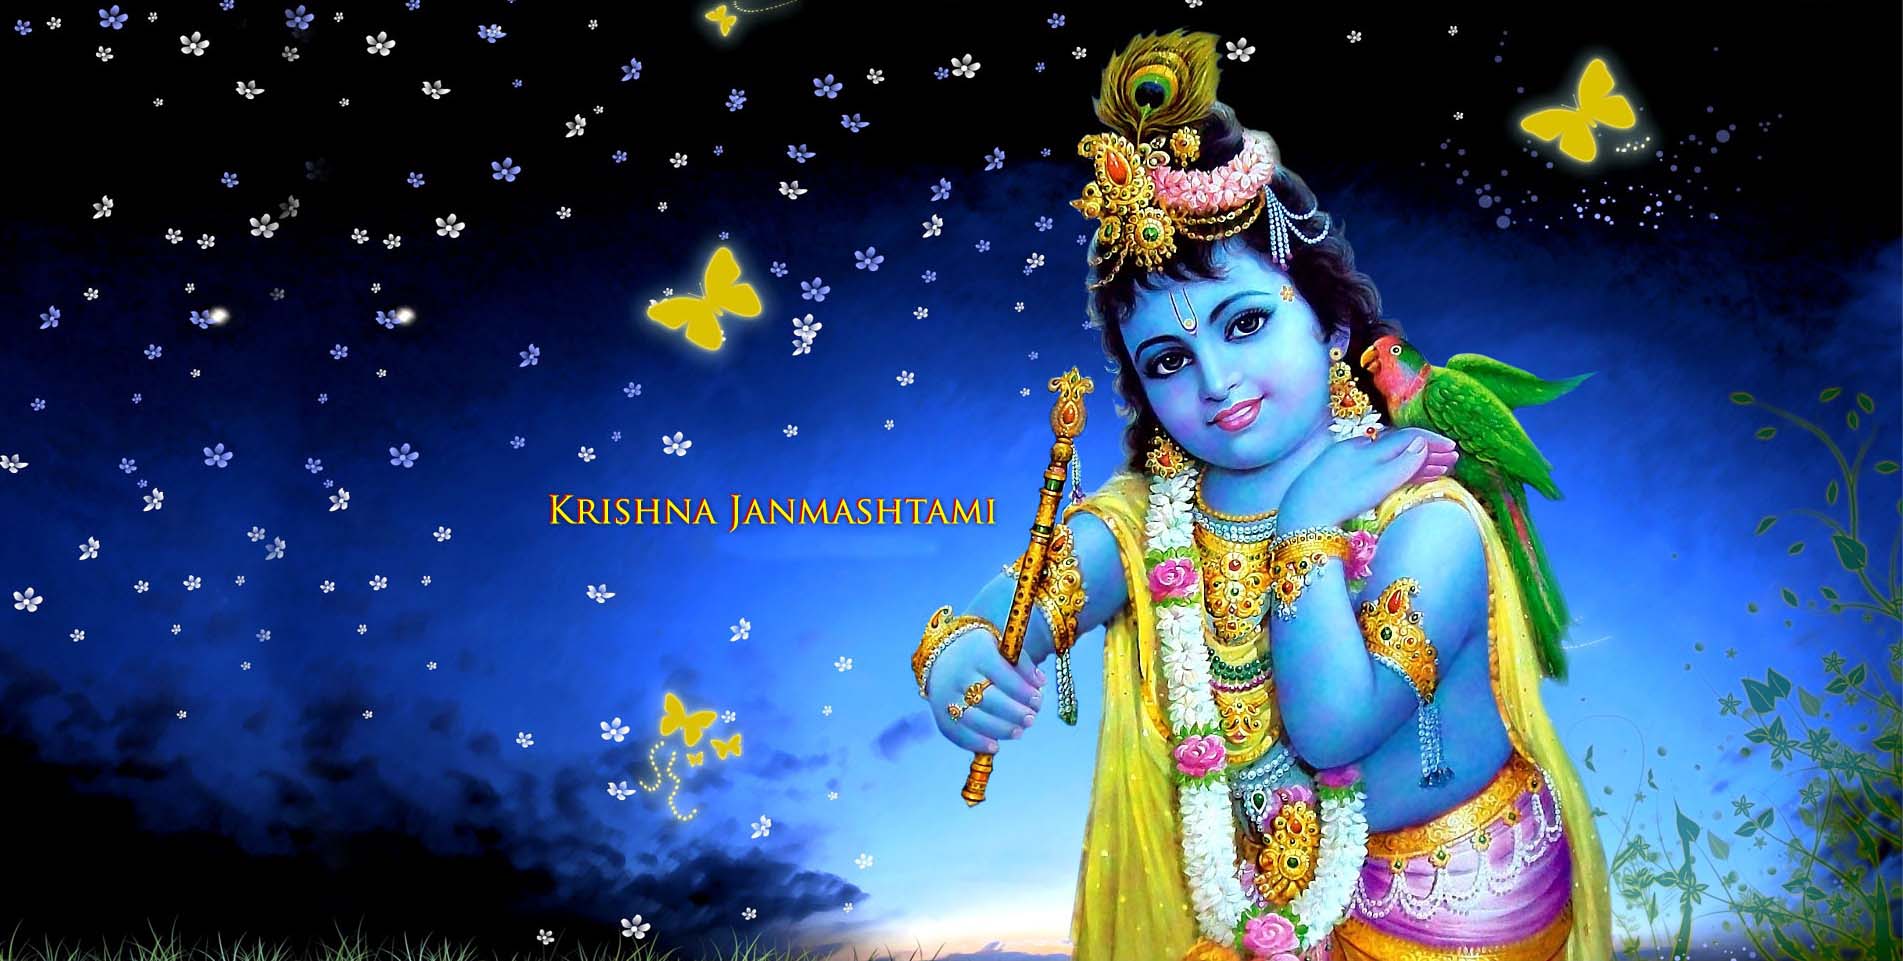 Krishna Janmashtami photos, image & wallpapers download